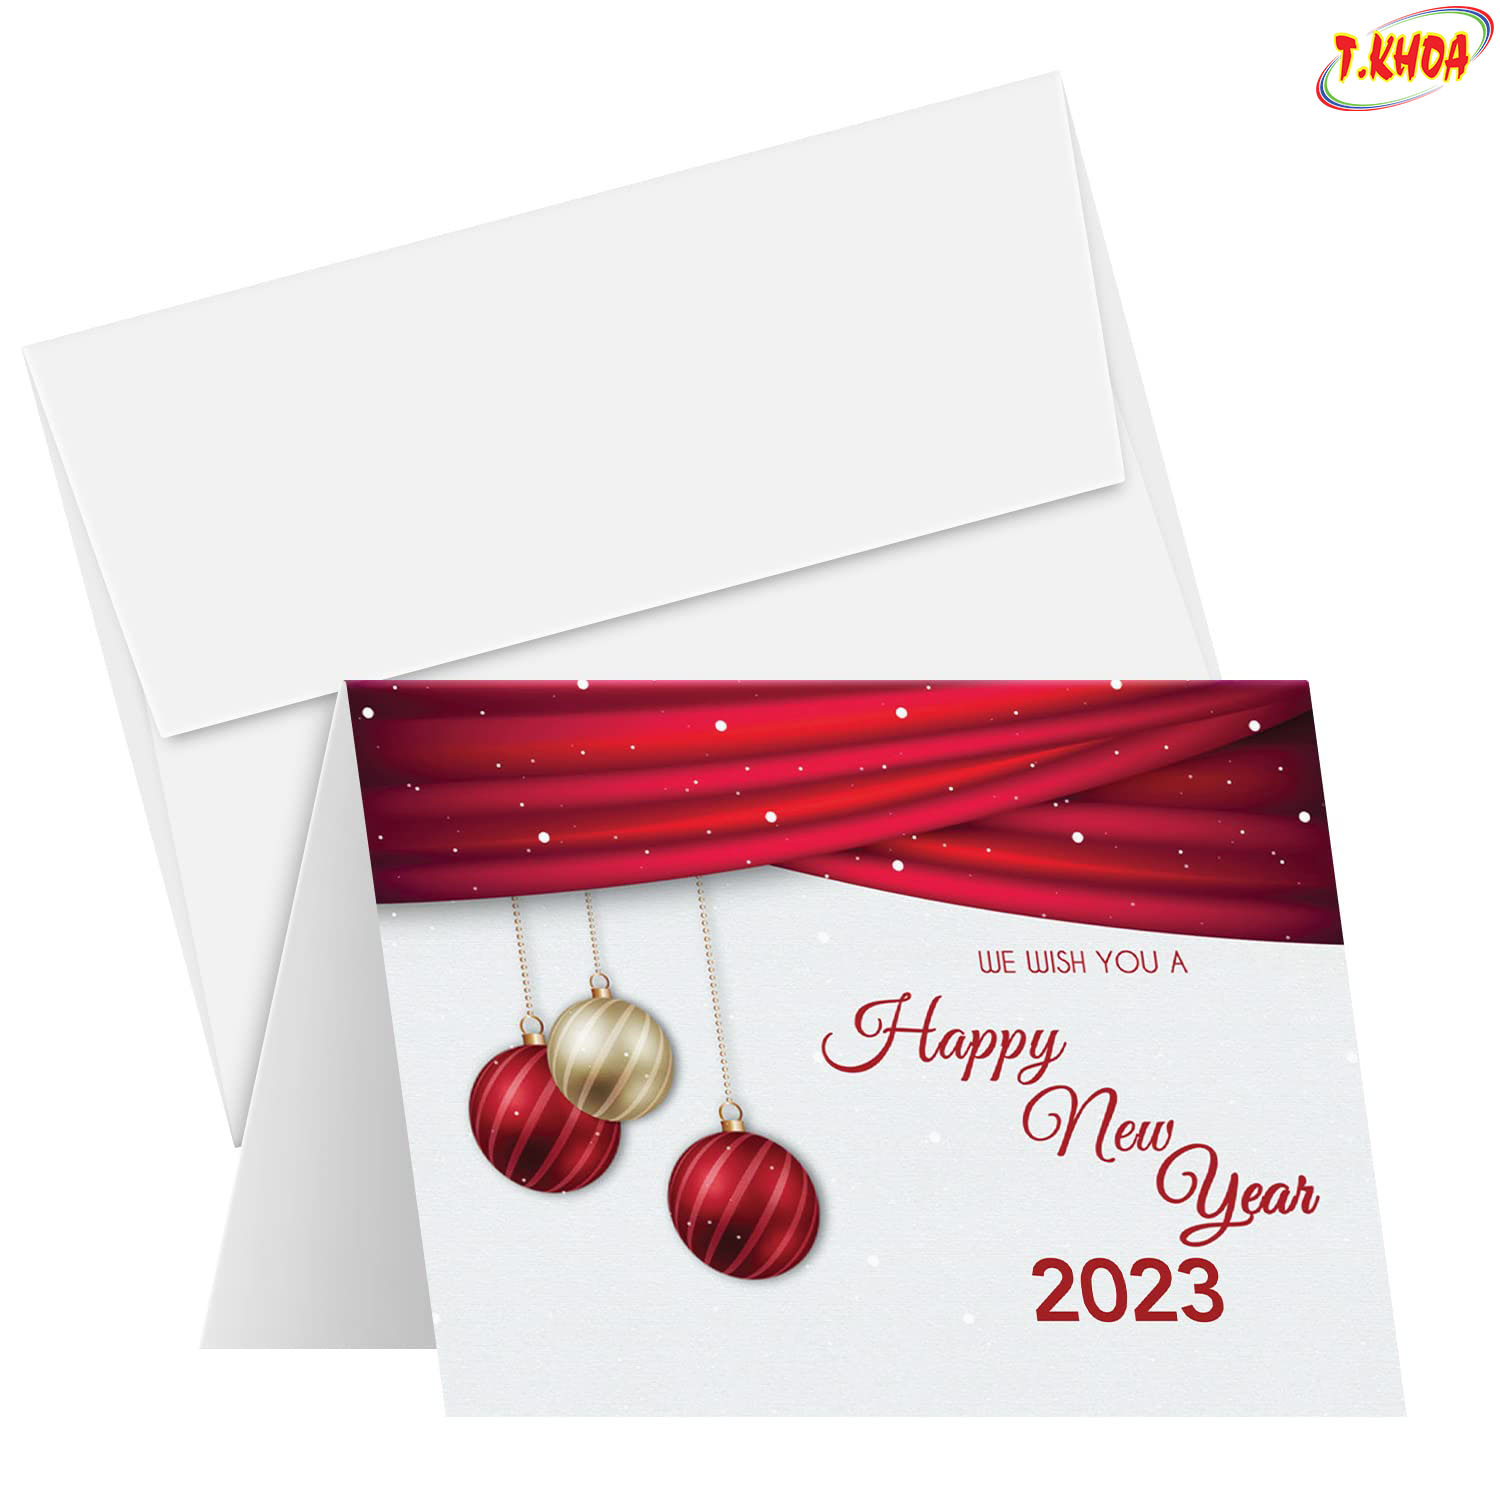 Thiệp chúc mừng năm mới là gì, những yếu tố nào tạo nên tấm thiệp chúc mừng năm mới?